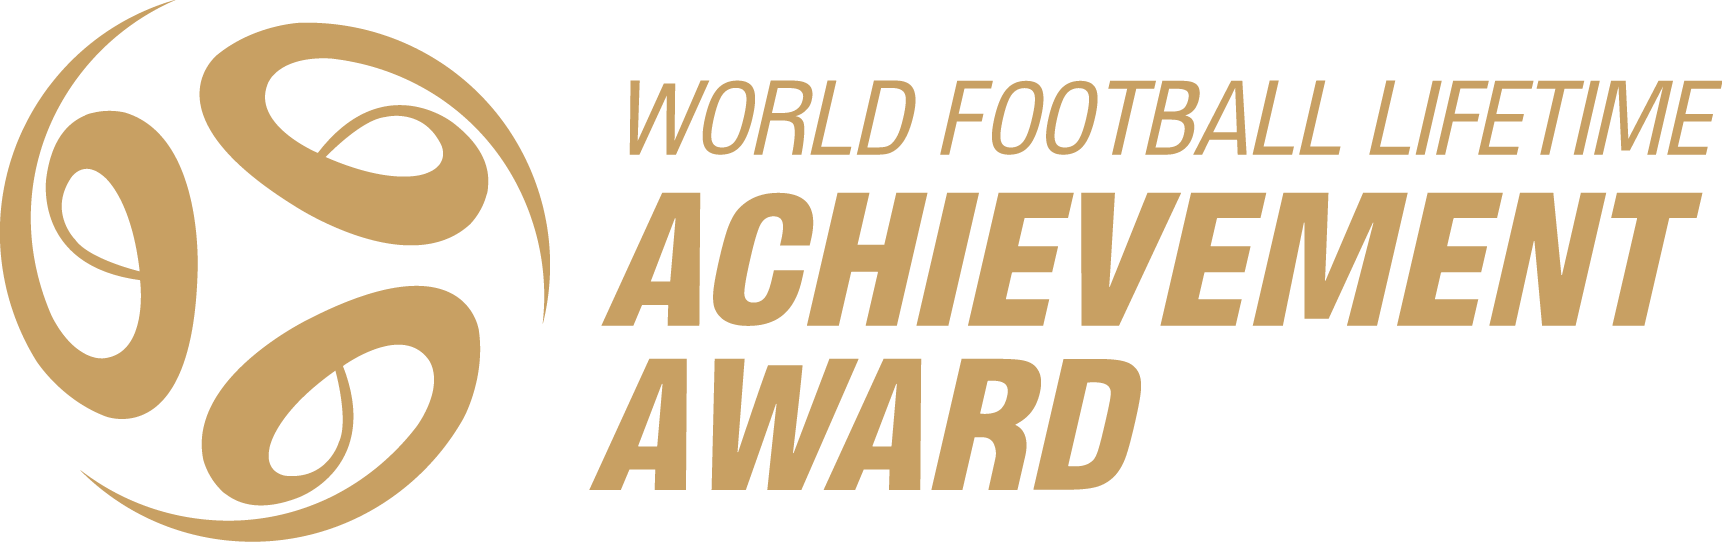 WORLD FOOTBALL LIFETIME ACHIEVEMENT AWARD